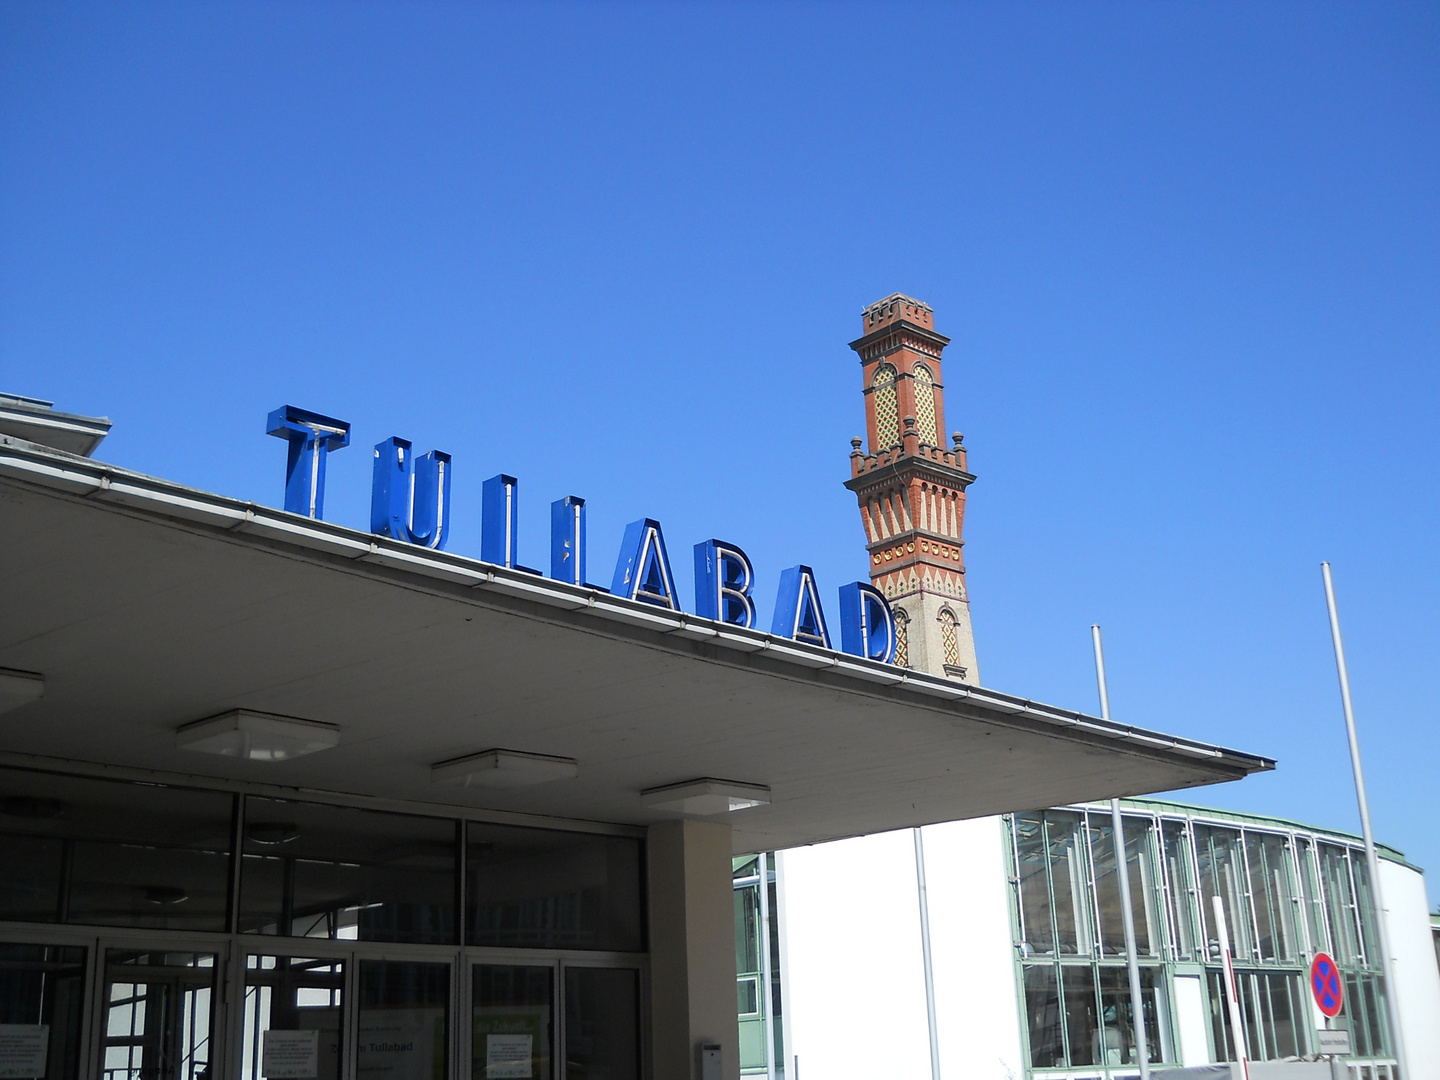 Tullabad in Karlsruhe